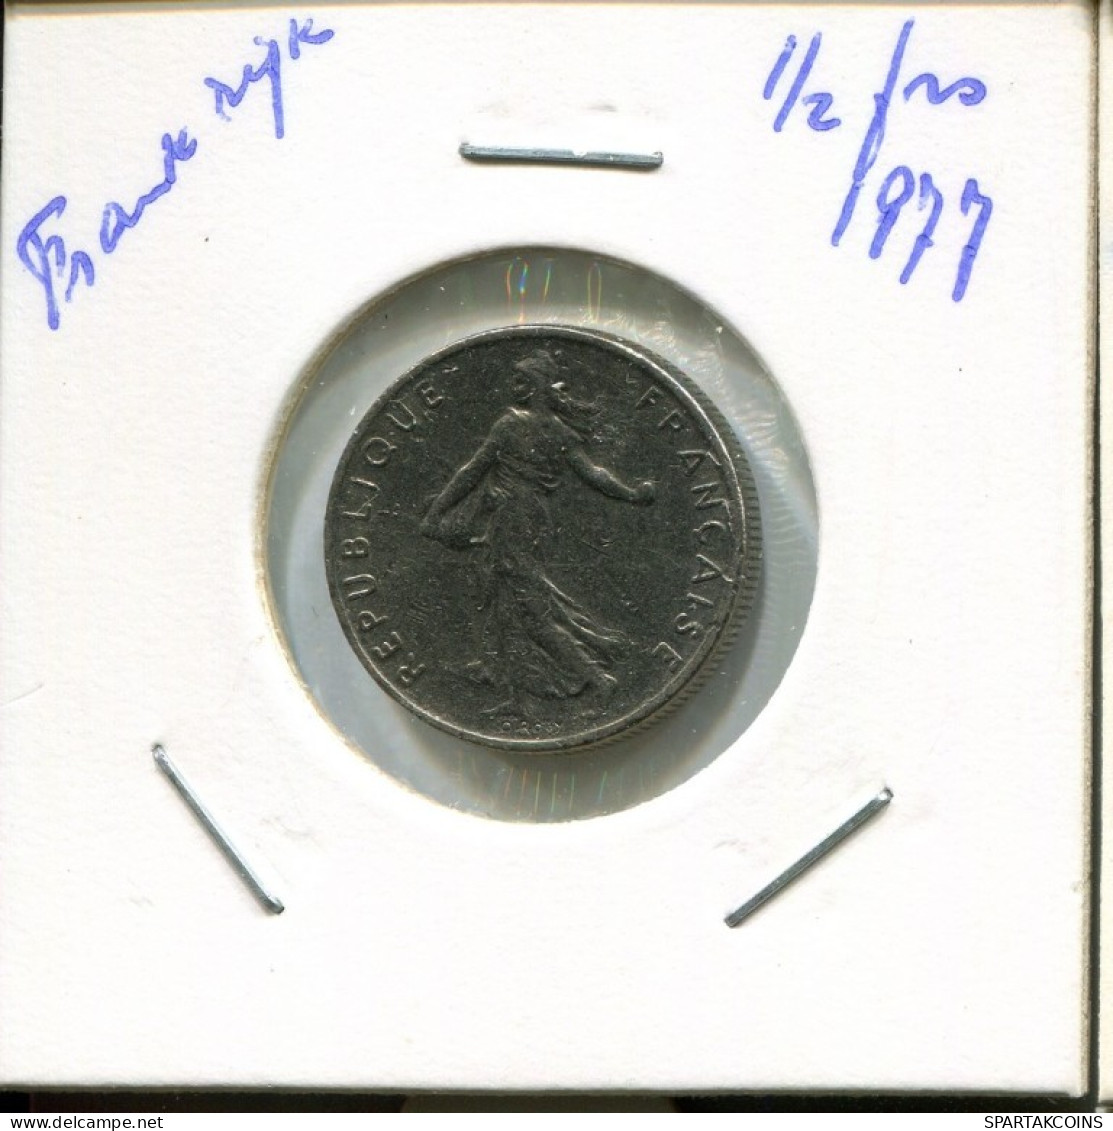 1/2 FRANC 1977 FRANKREICH FRANCE Französisch Münze #AN919.D.A - 1/2 Franc